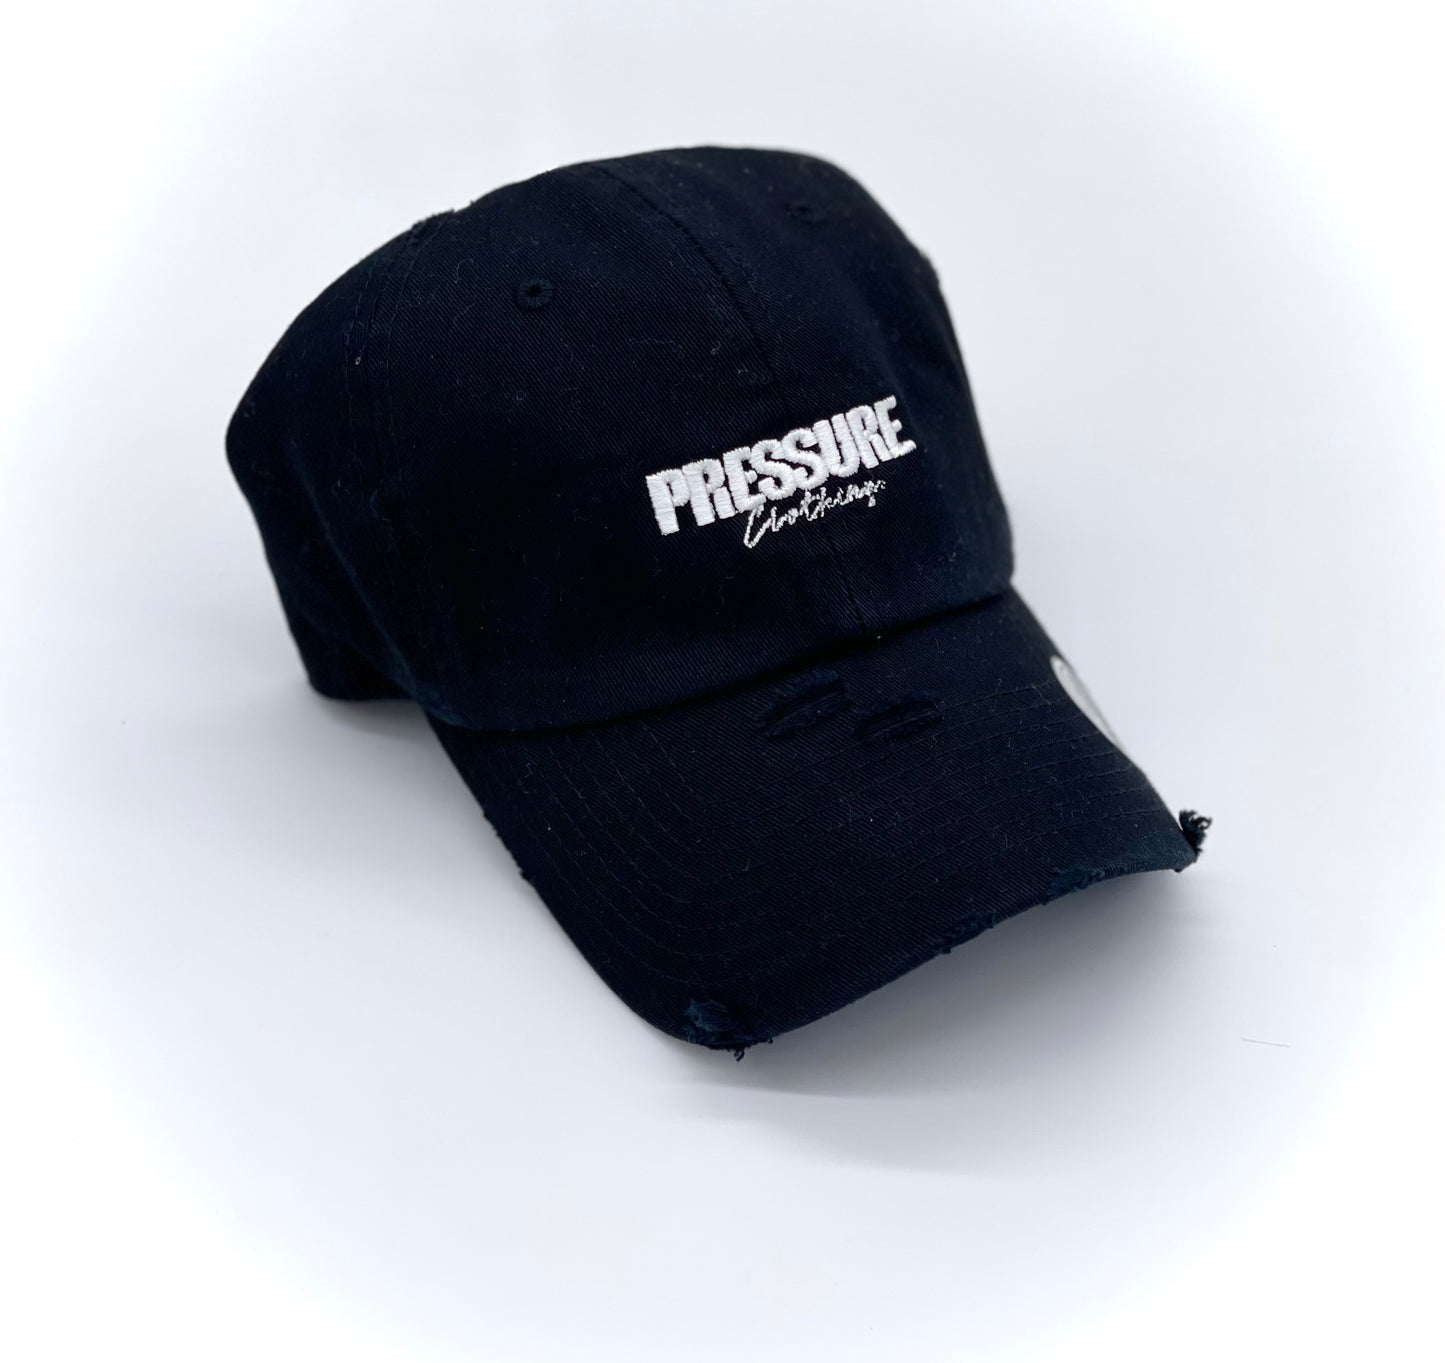 Pressure Vintage Dad Hat in Black